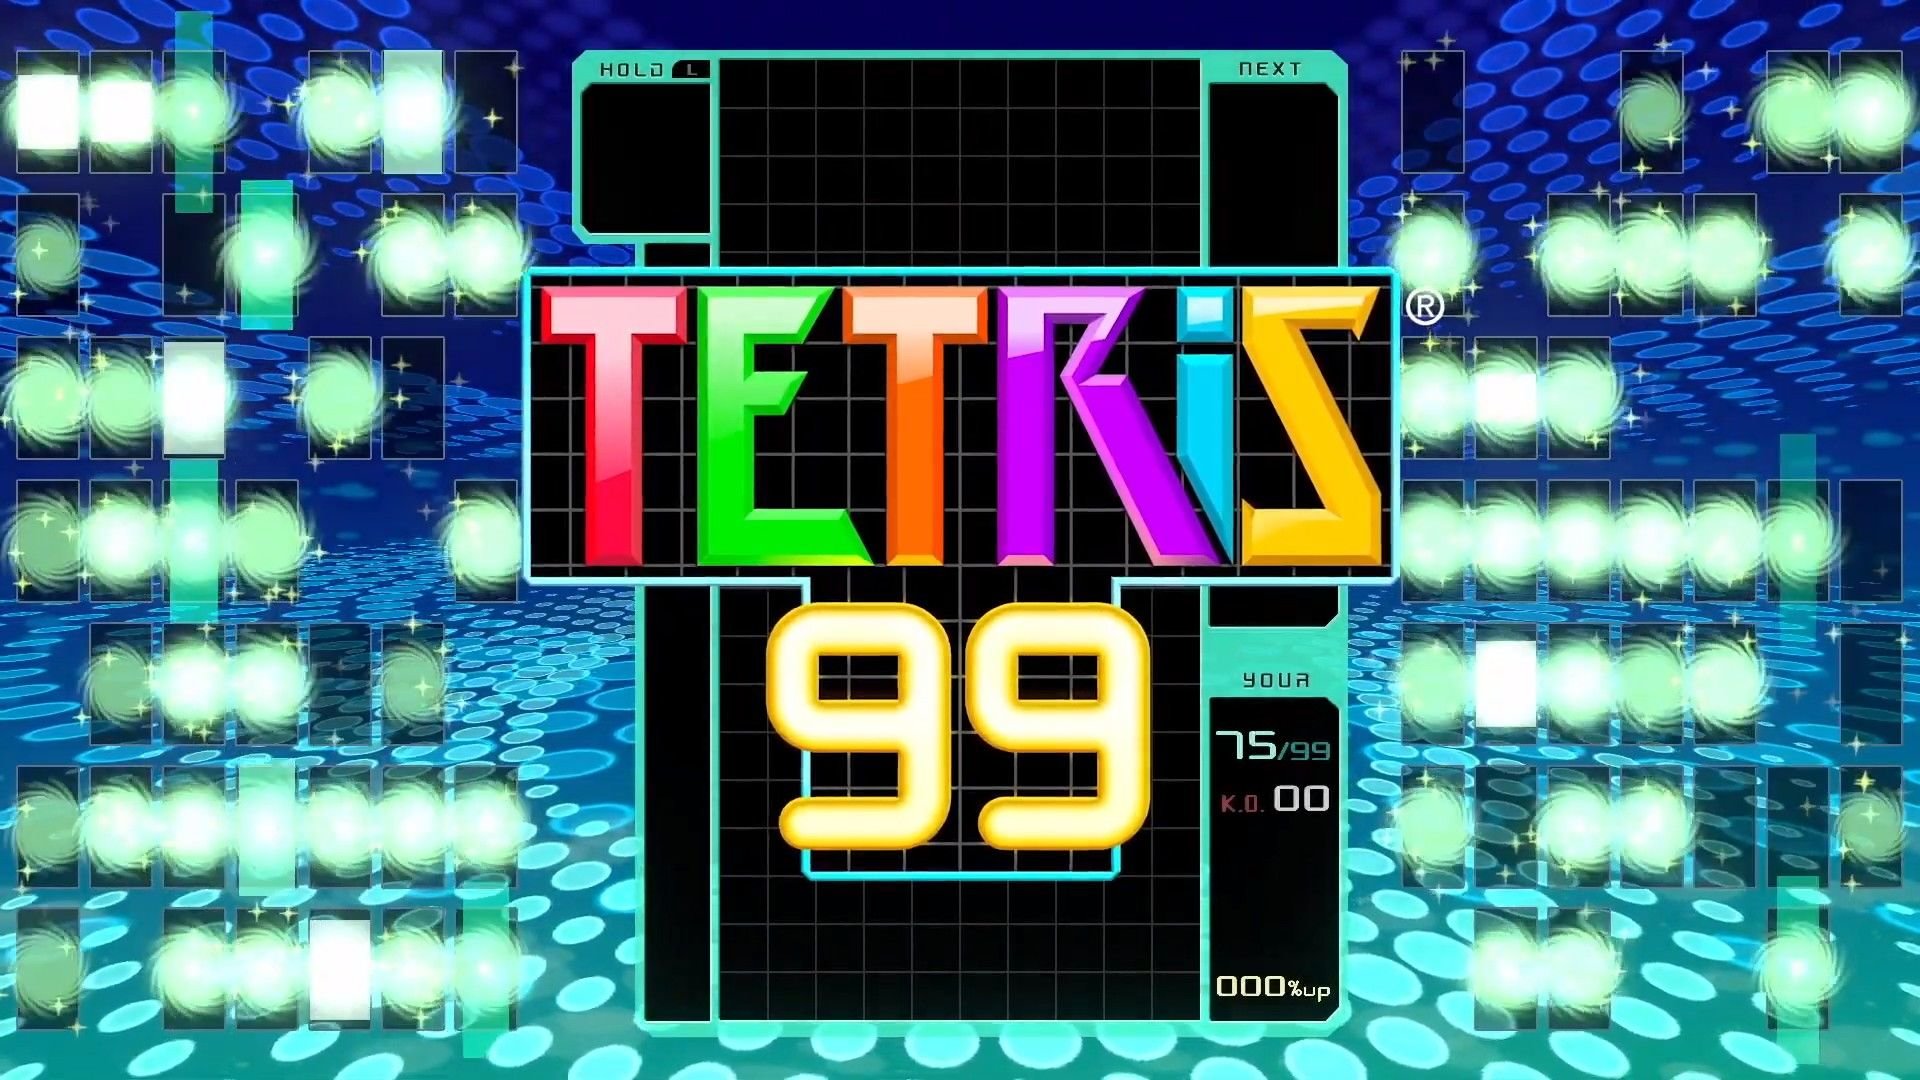 tetris 99 nintendo store